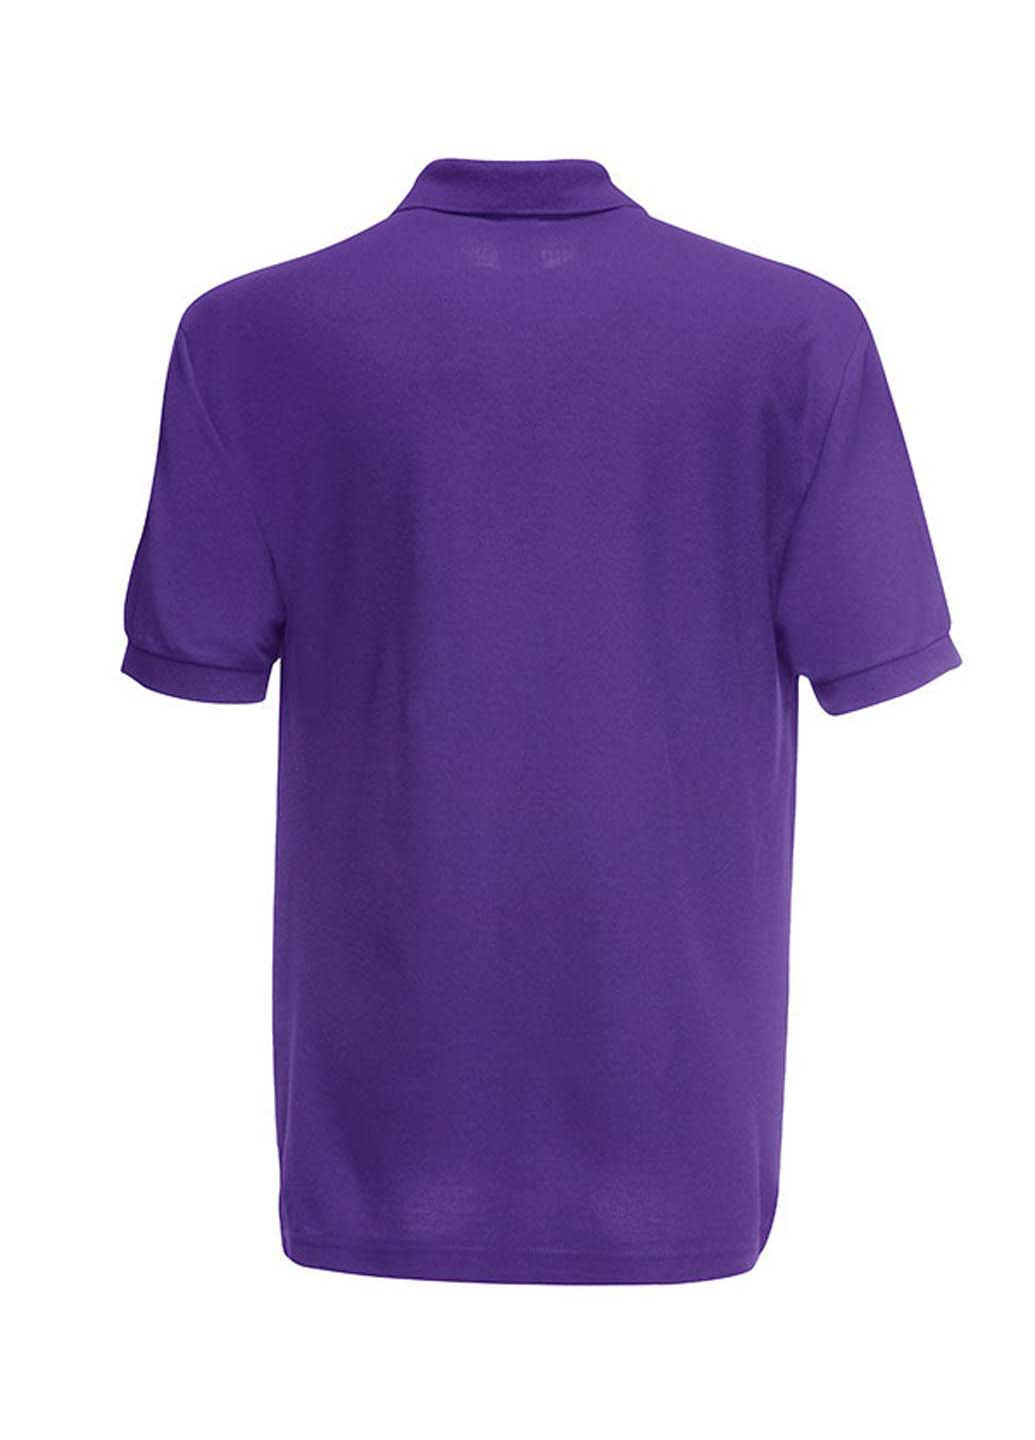 Фиолетовая детская футболка-поло для мальчика Fruit of the Loom